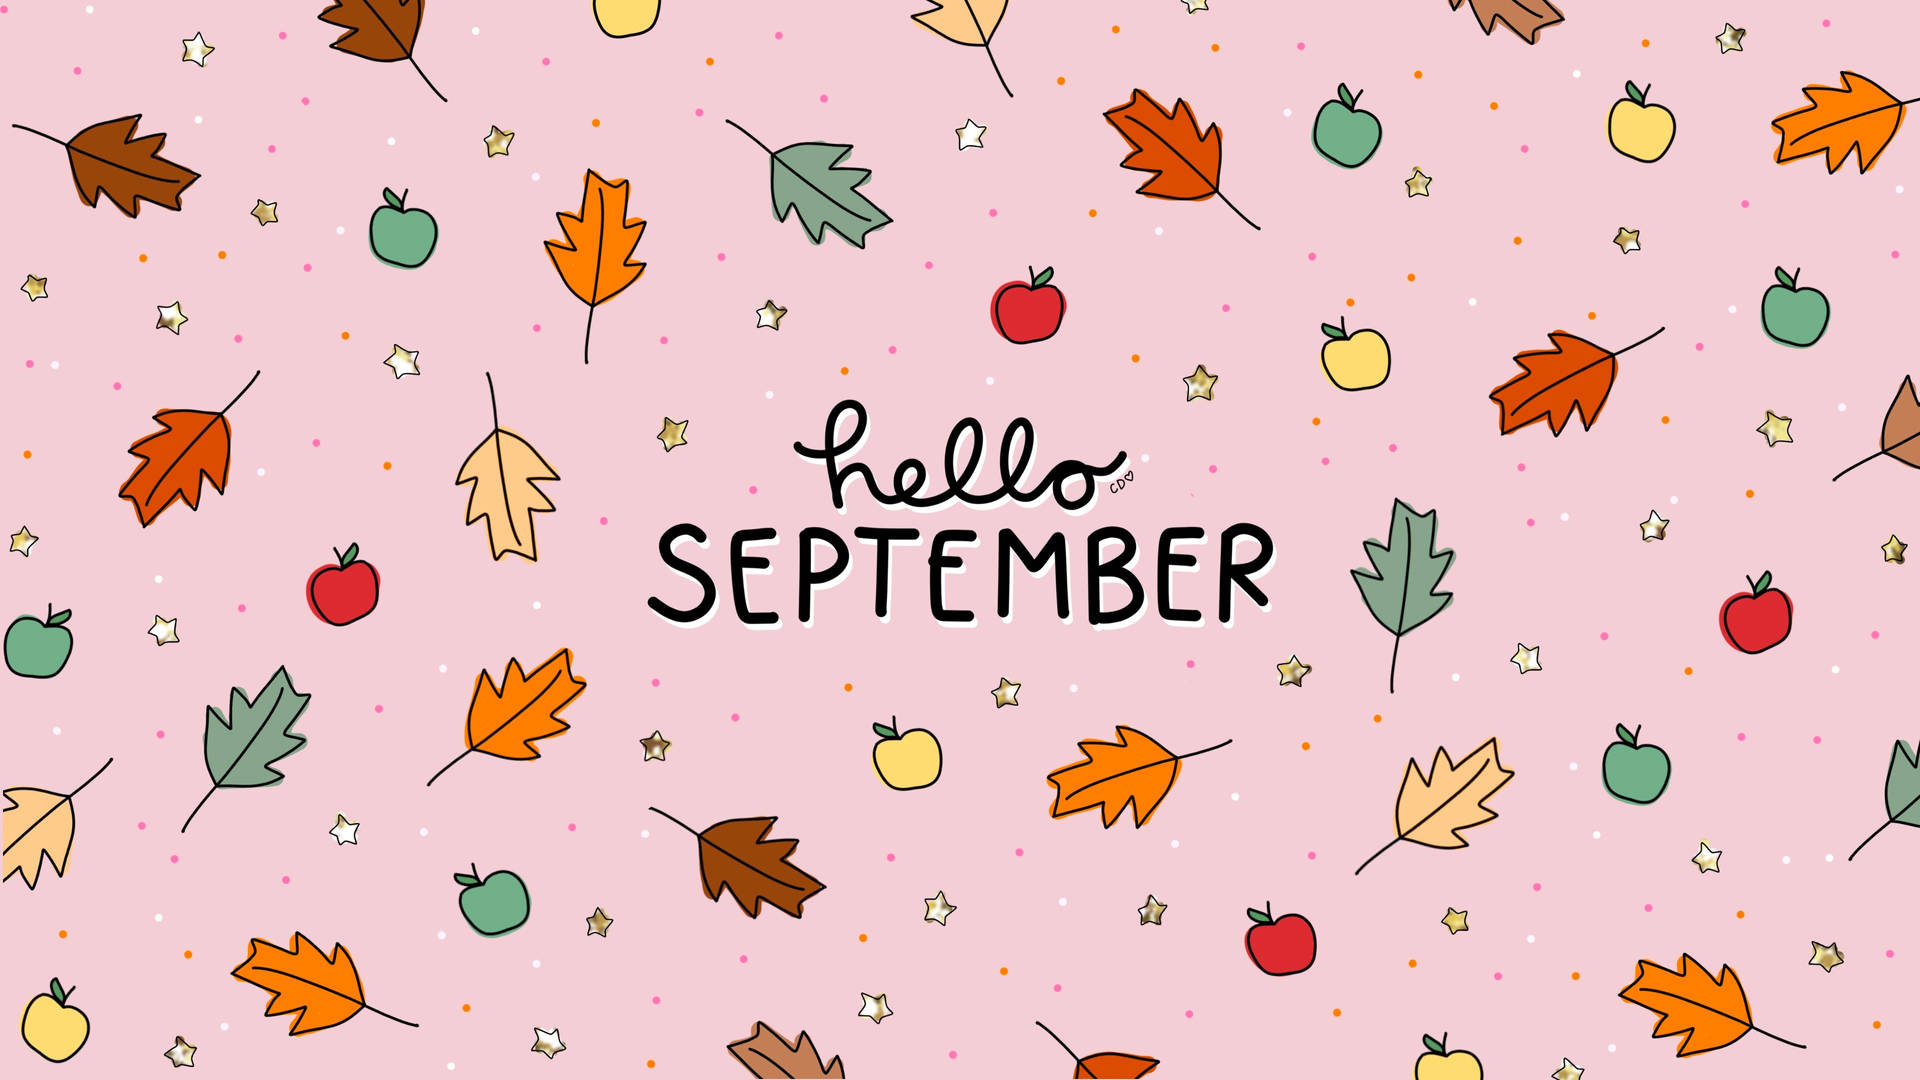 Free September Wallpaper Downloads, [100+] September Wallpapers for